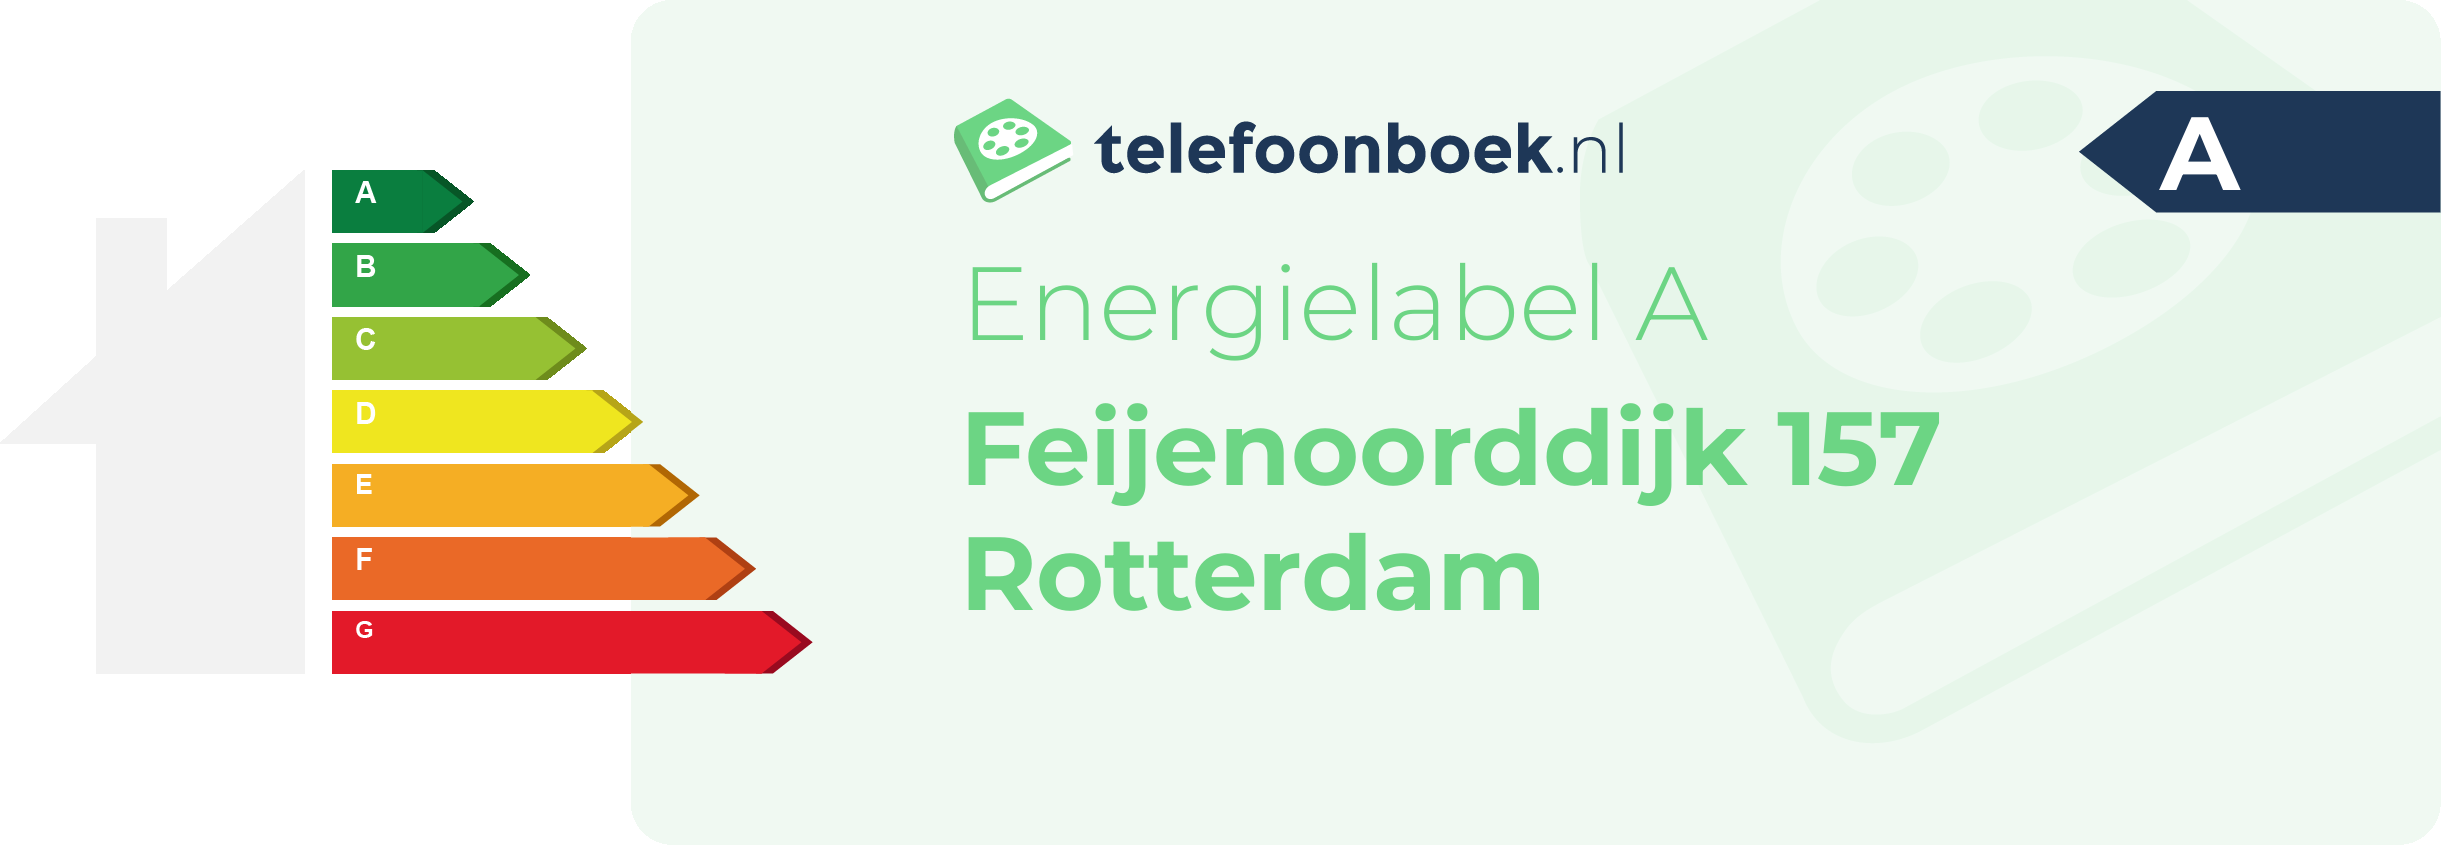 Energielabel Feijenoorddijk 157 Rotterdam